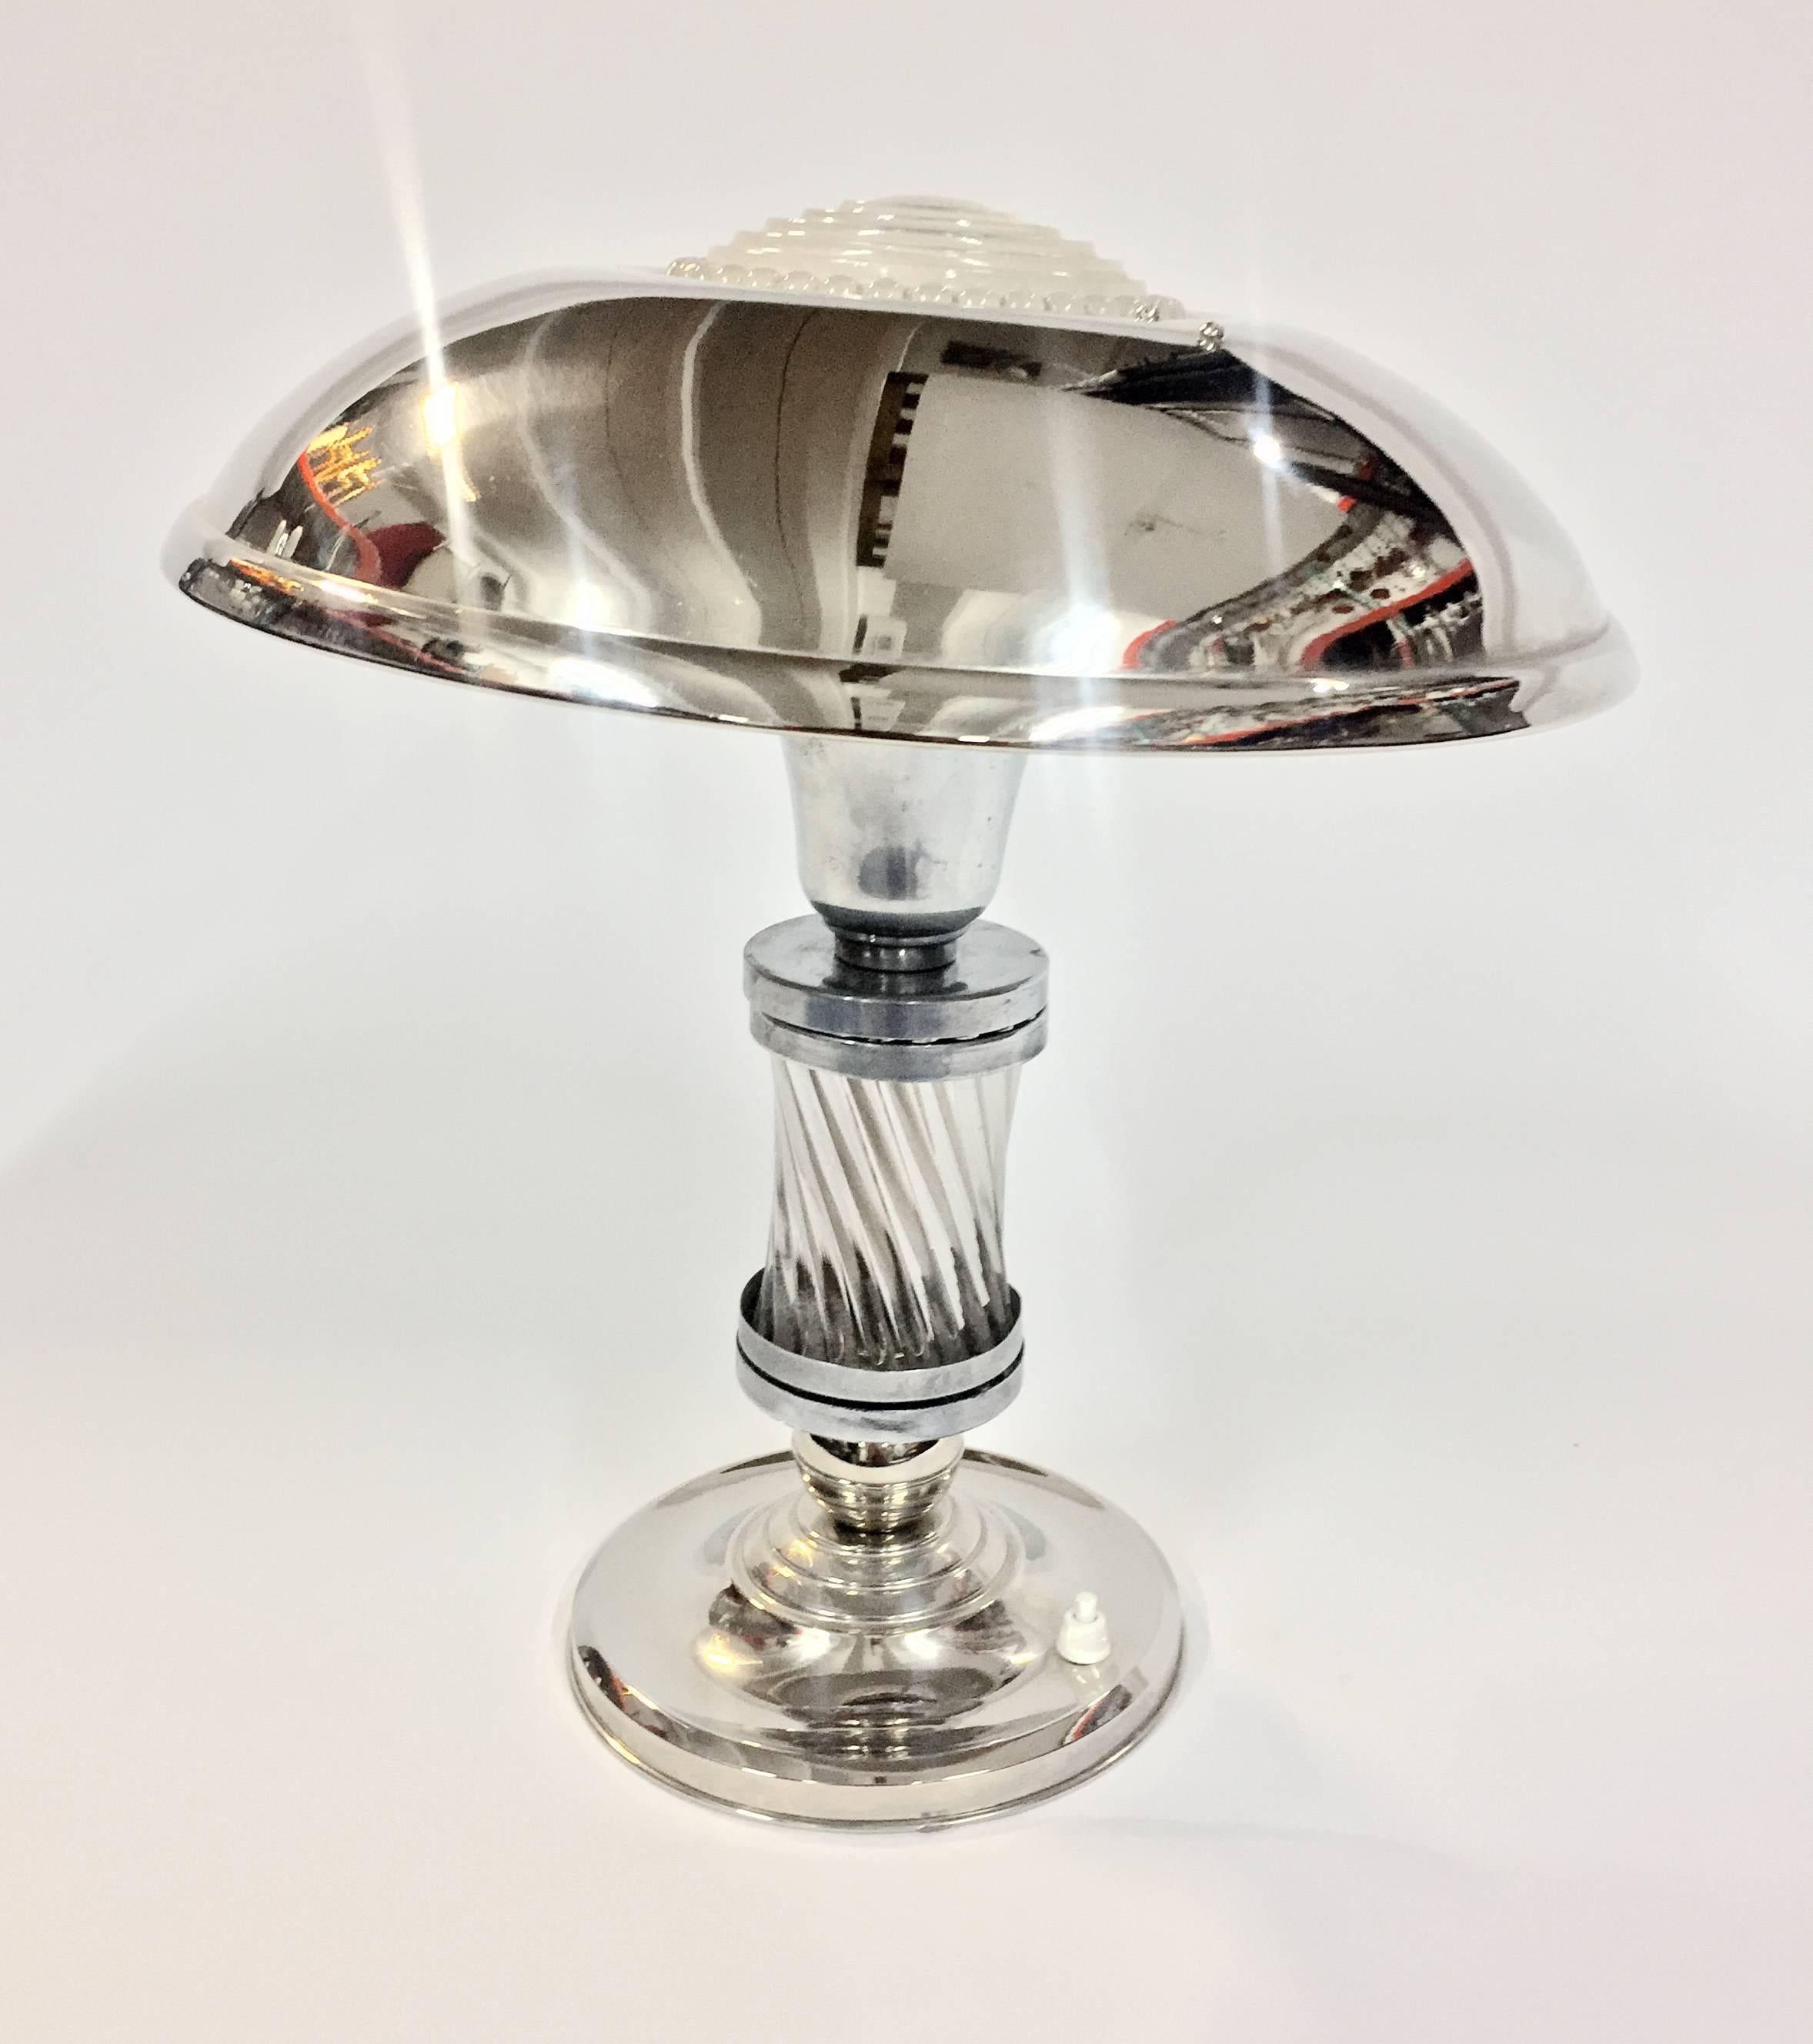 Diese luxuriöse Art-Déco-Tischlampe aus dem Jahr 1925 hat einen verchromten Korpus mit einem versilberten Sockel und Schirm, die einen schönen Kontrast bilden. Glasstäbe auf dem Korpus und geformte Glasplatte auf dem Schirm. Der Schirm ist